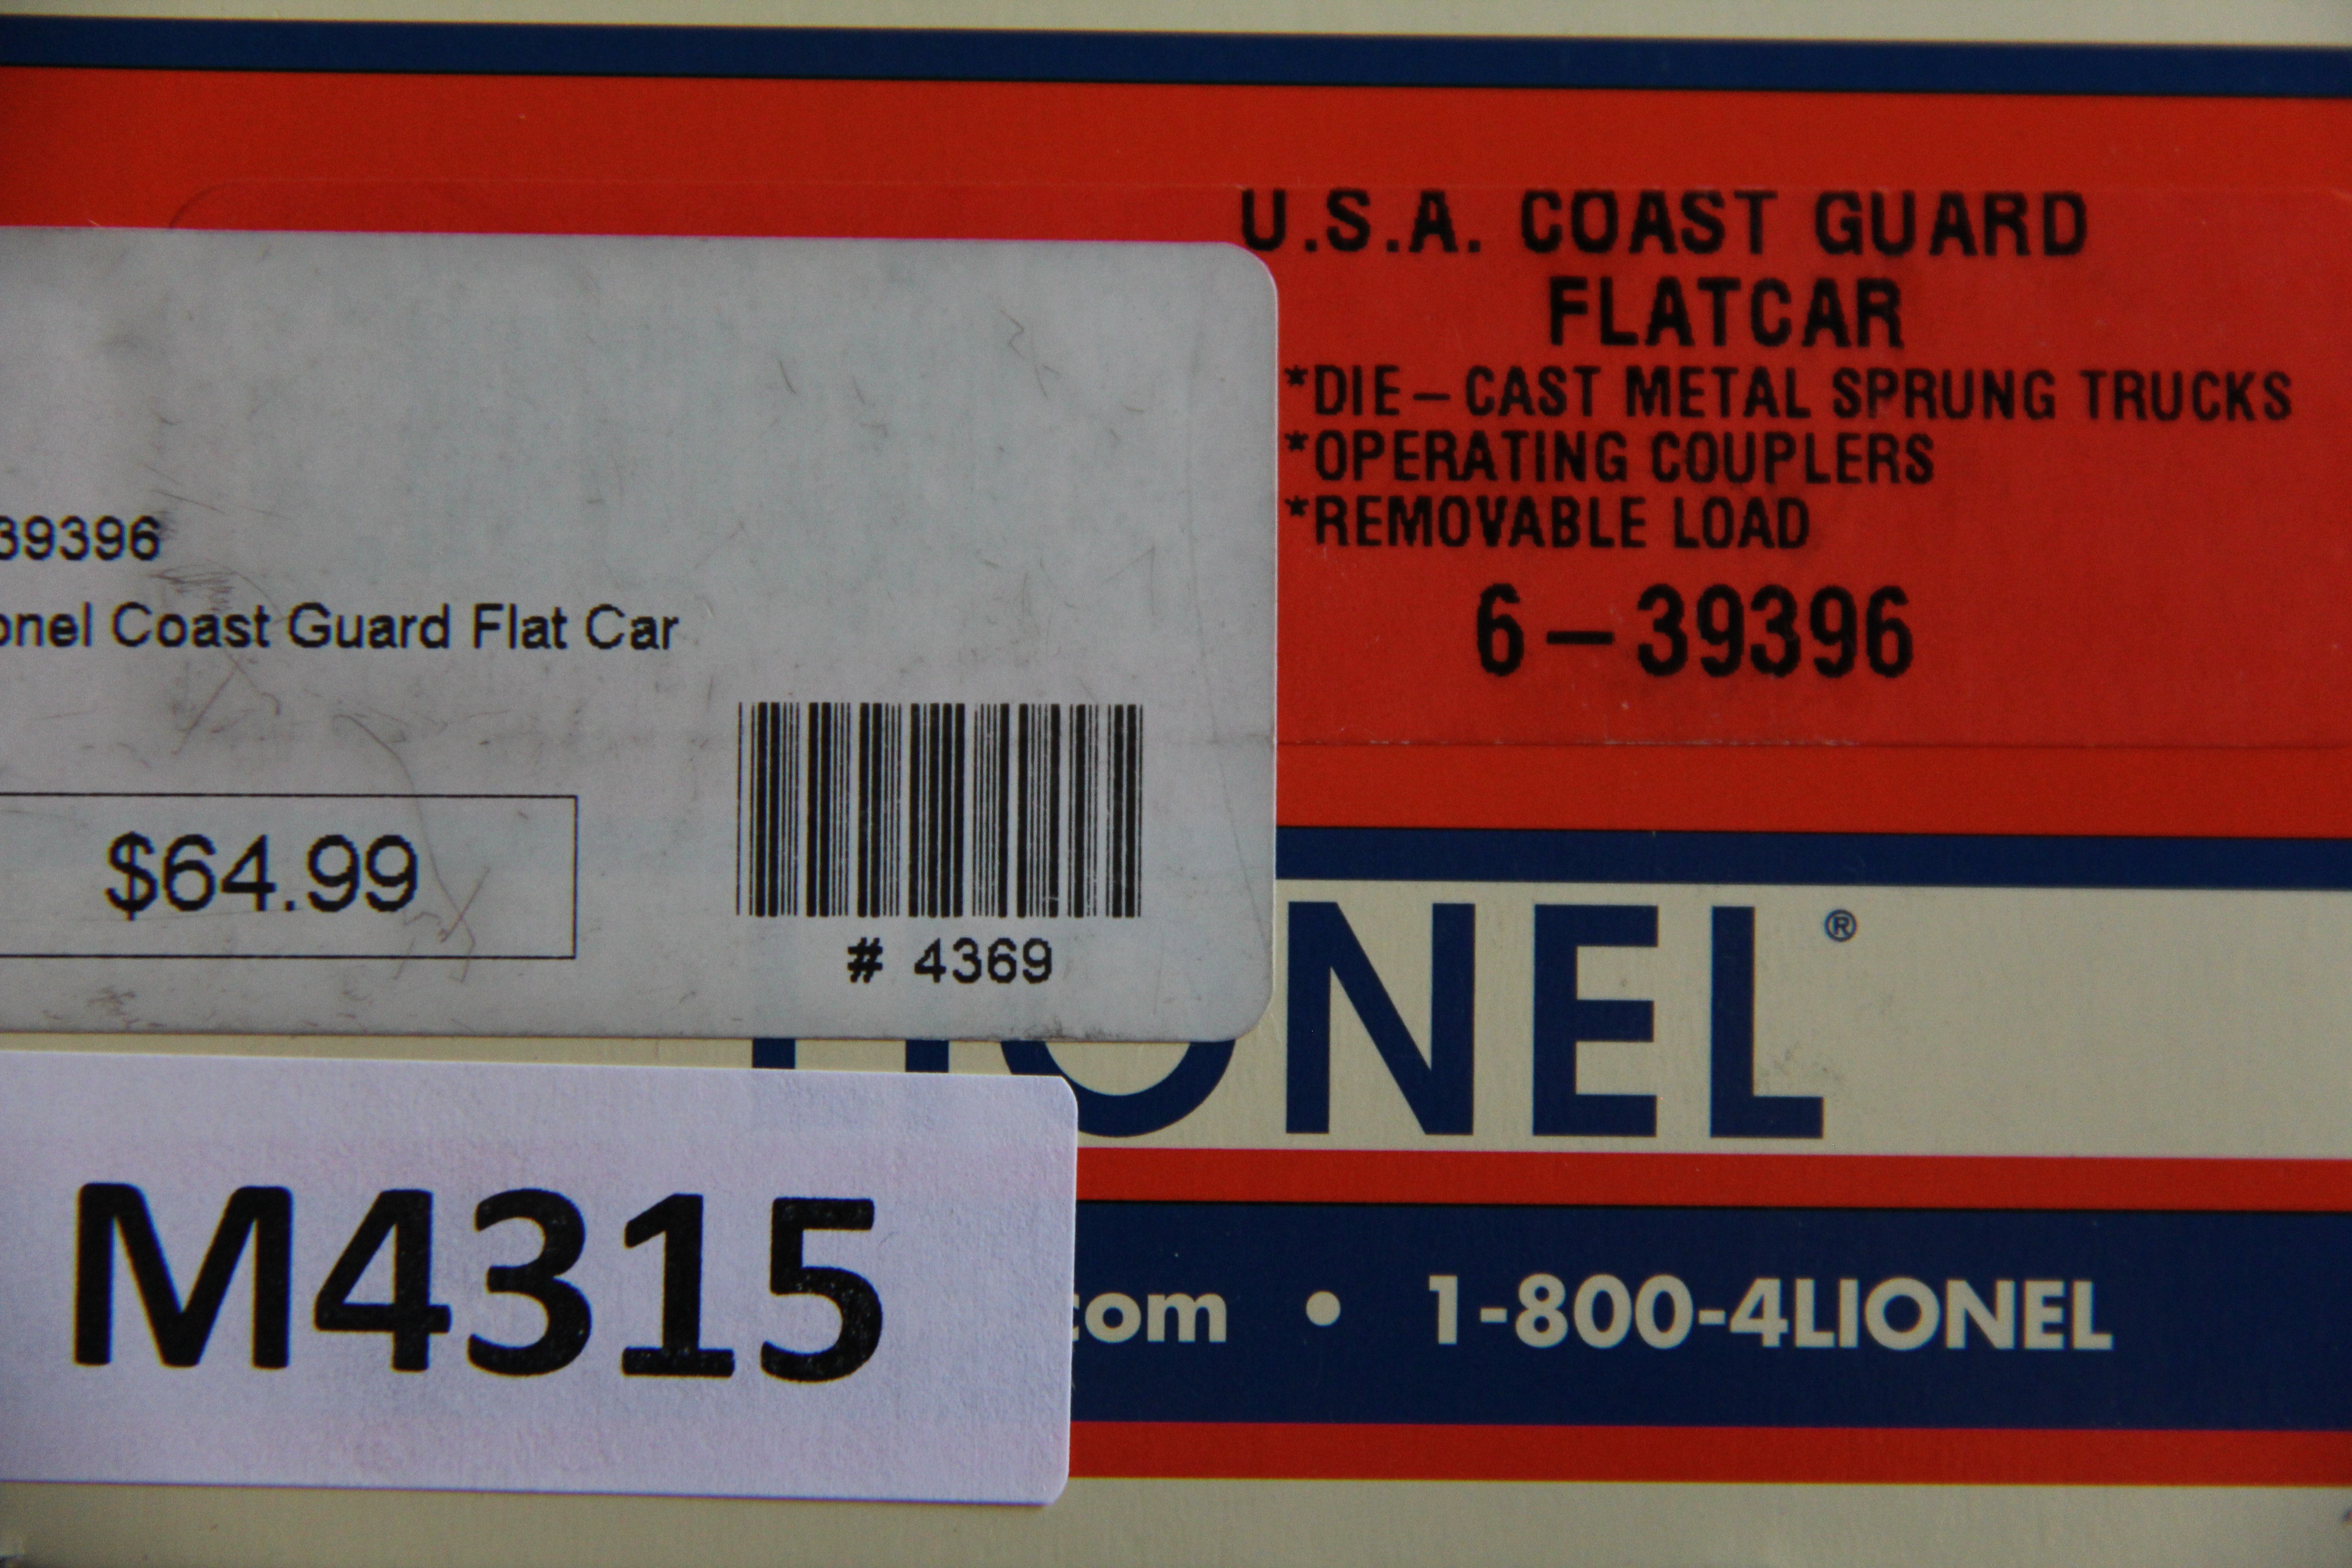 Lionel 6-39396 U.S.A Coast Guard Flatcar-Second hand-M4315